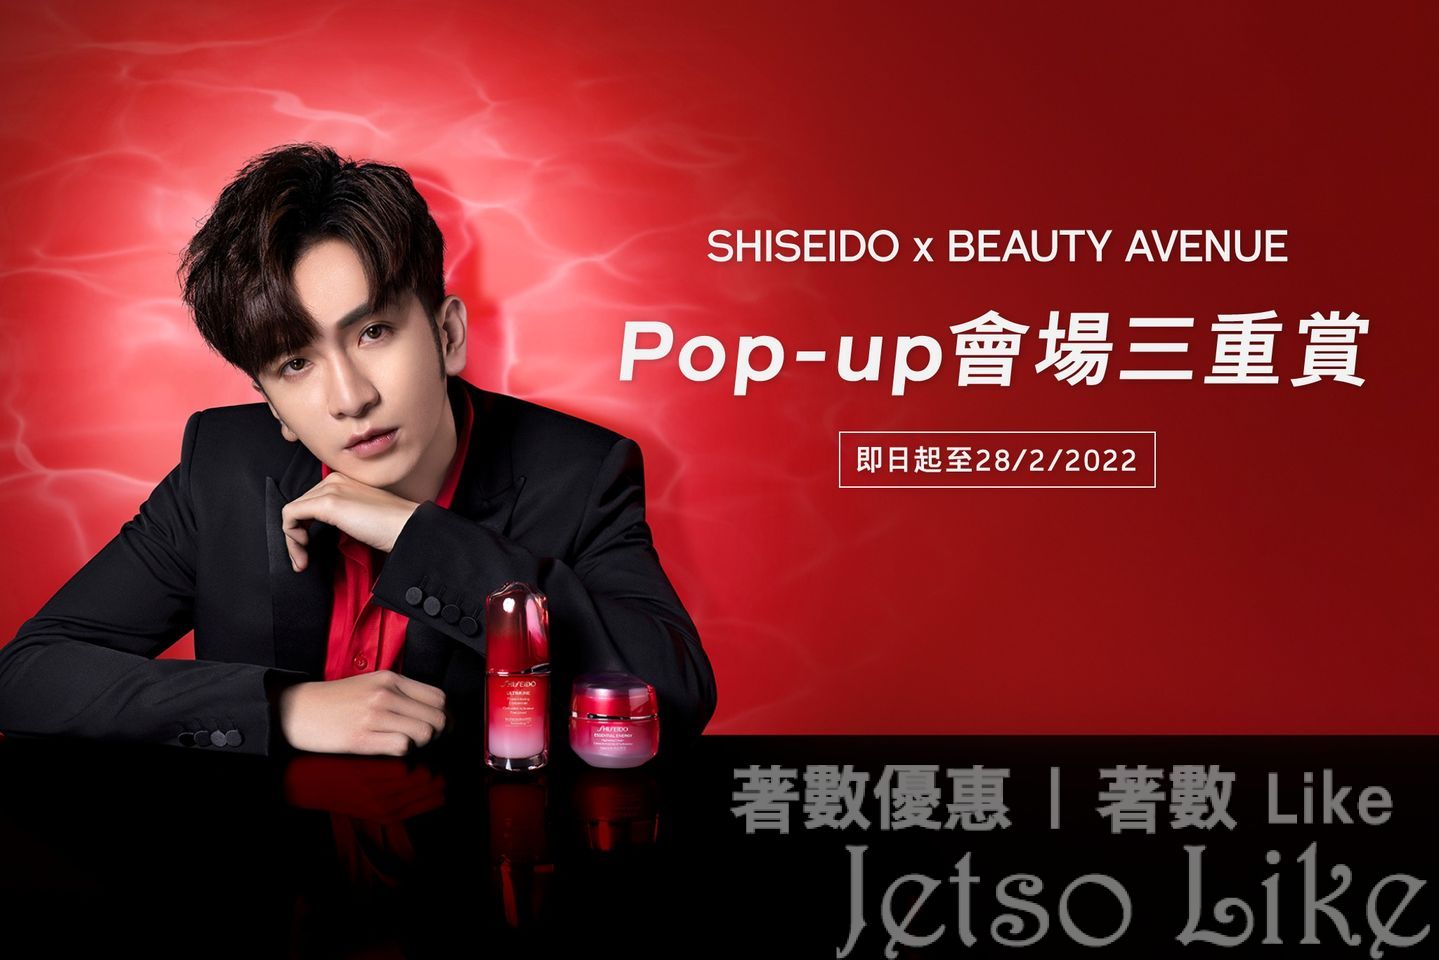 SHISEIDO Pop-up Store 免費換領 皇牌免疫力補濕體驗組合